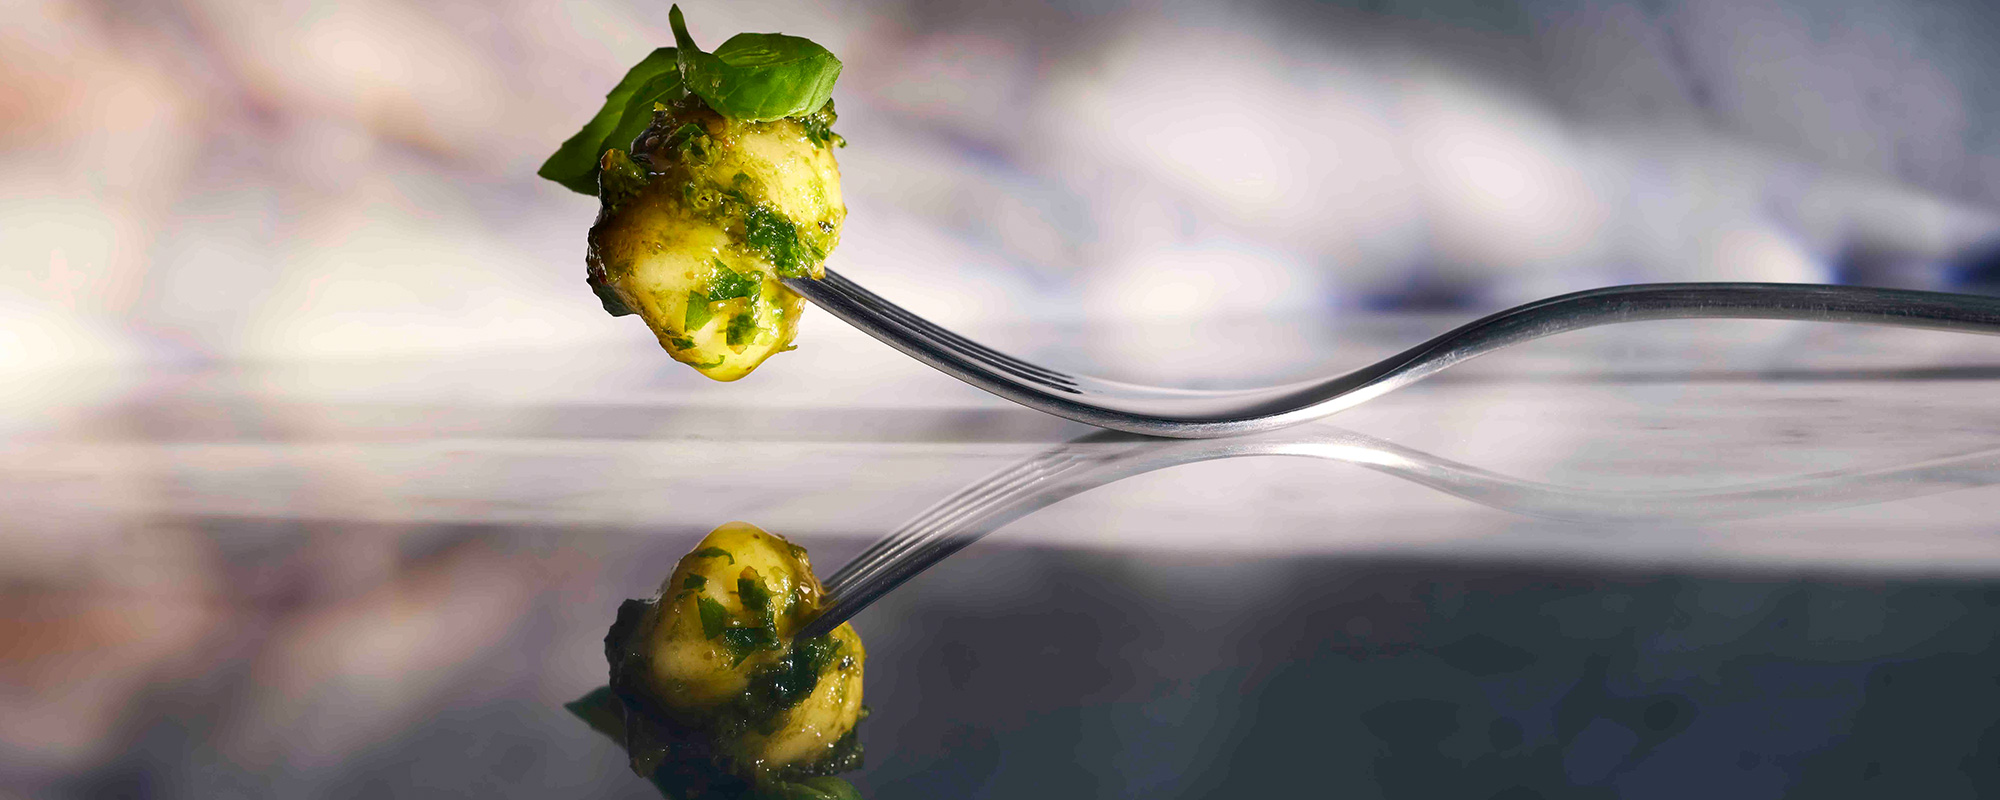 Ein Gnocchi auf einer Gabel zeigt unsere Expertise in Bereich Food Styling